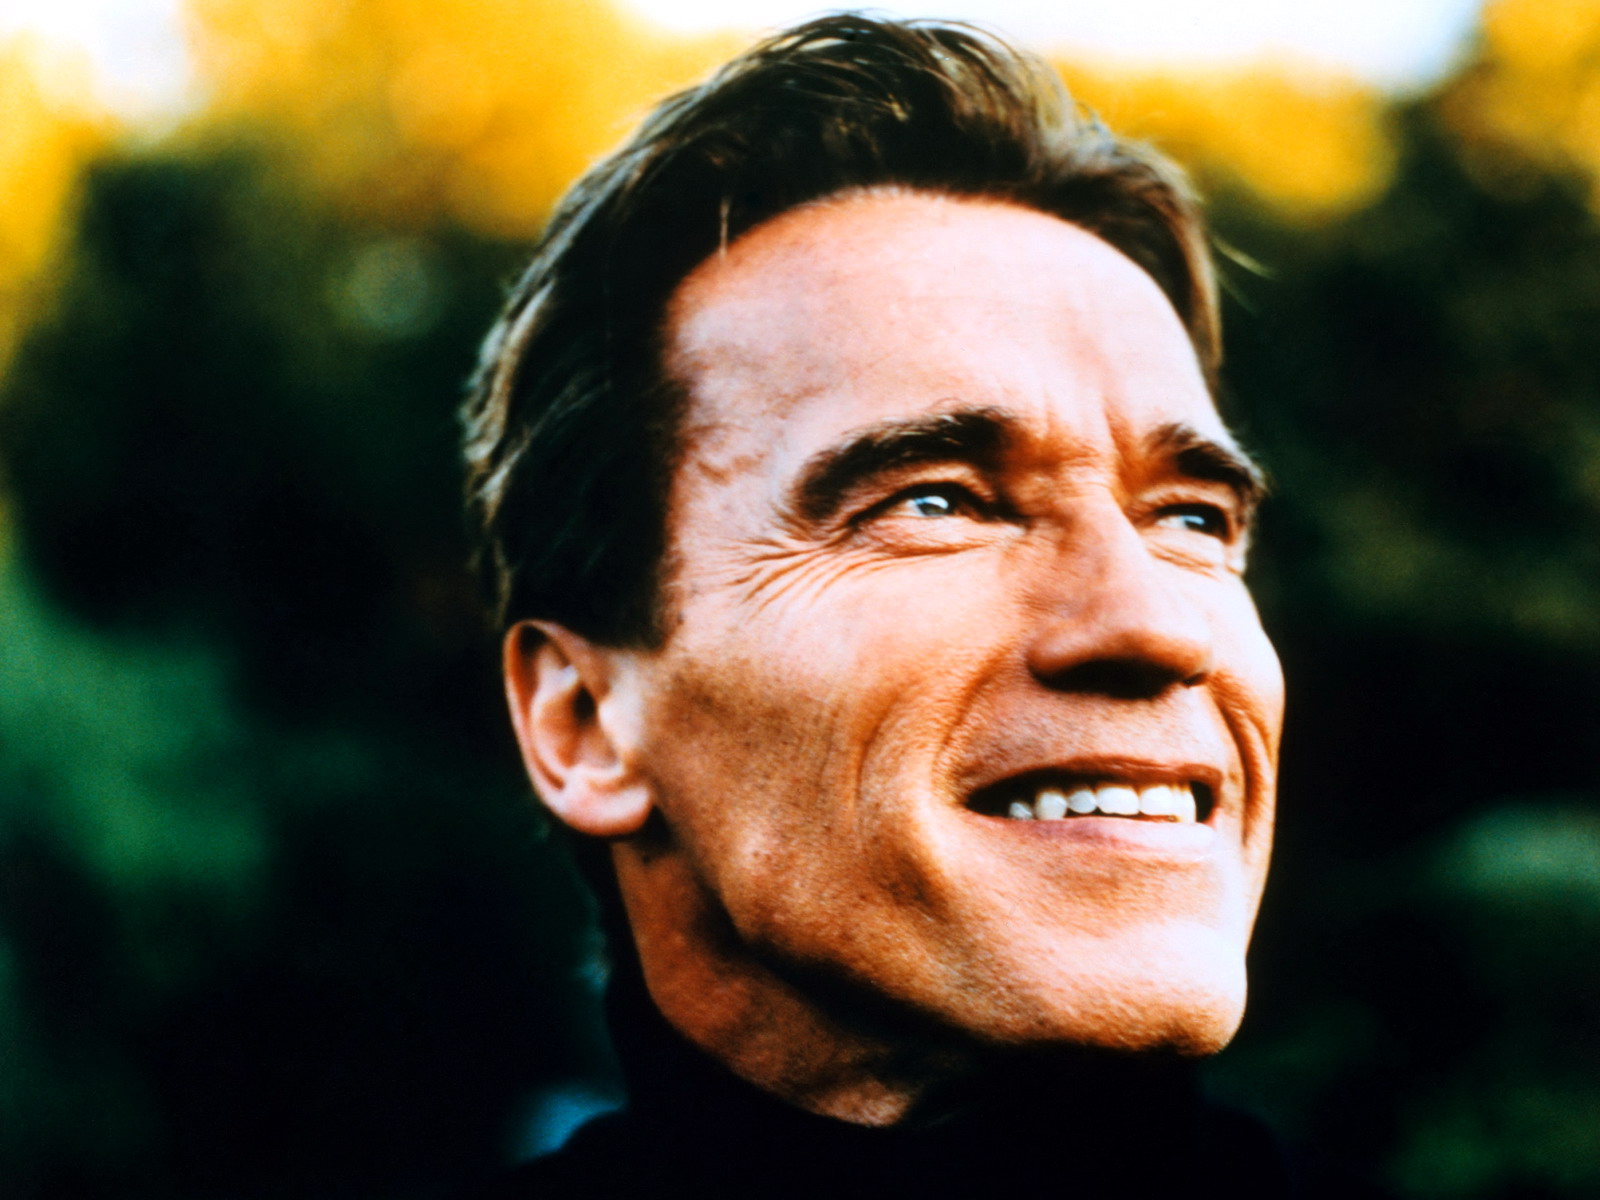 Arnold Schwarzenegger Wallpaper @ Go4Celebrity.com